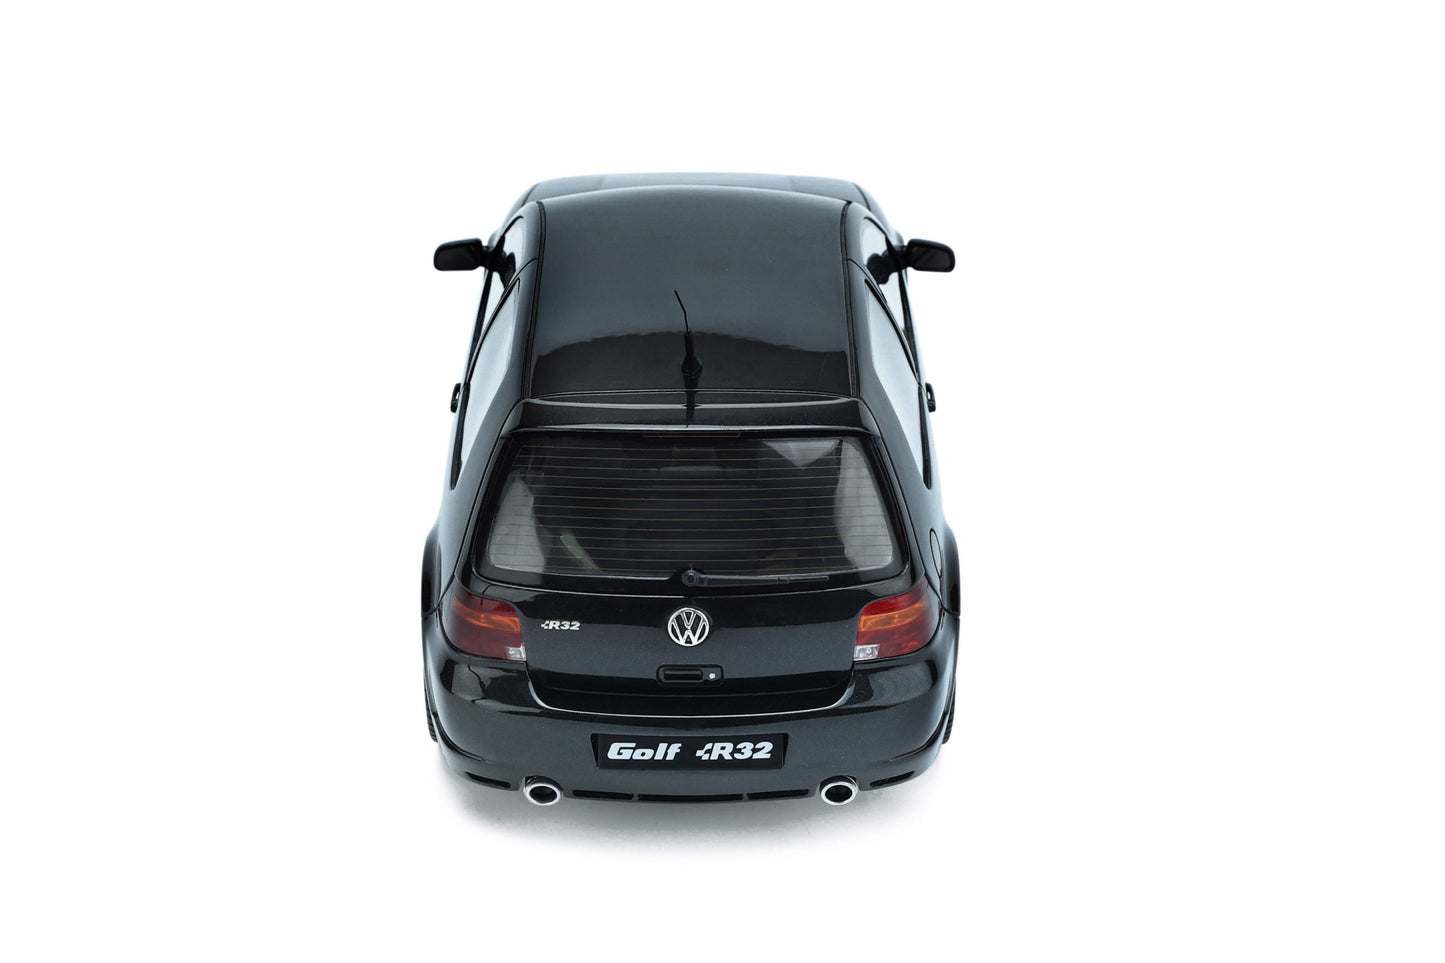 OttOmobile - Volkswagen Golf R32 (MKIV) (Black Magic Pearl) 1:18 Scale Model Car